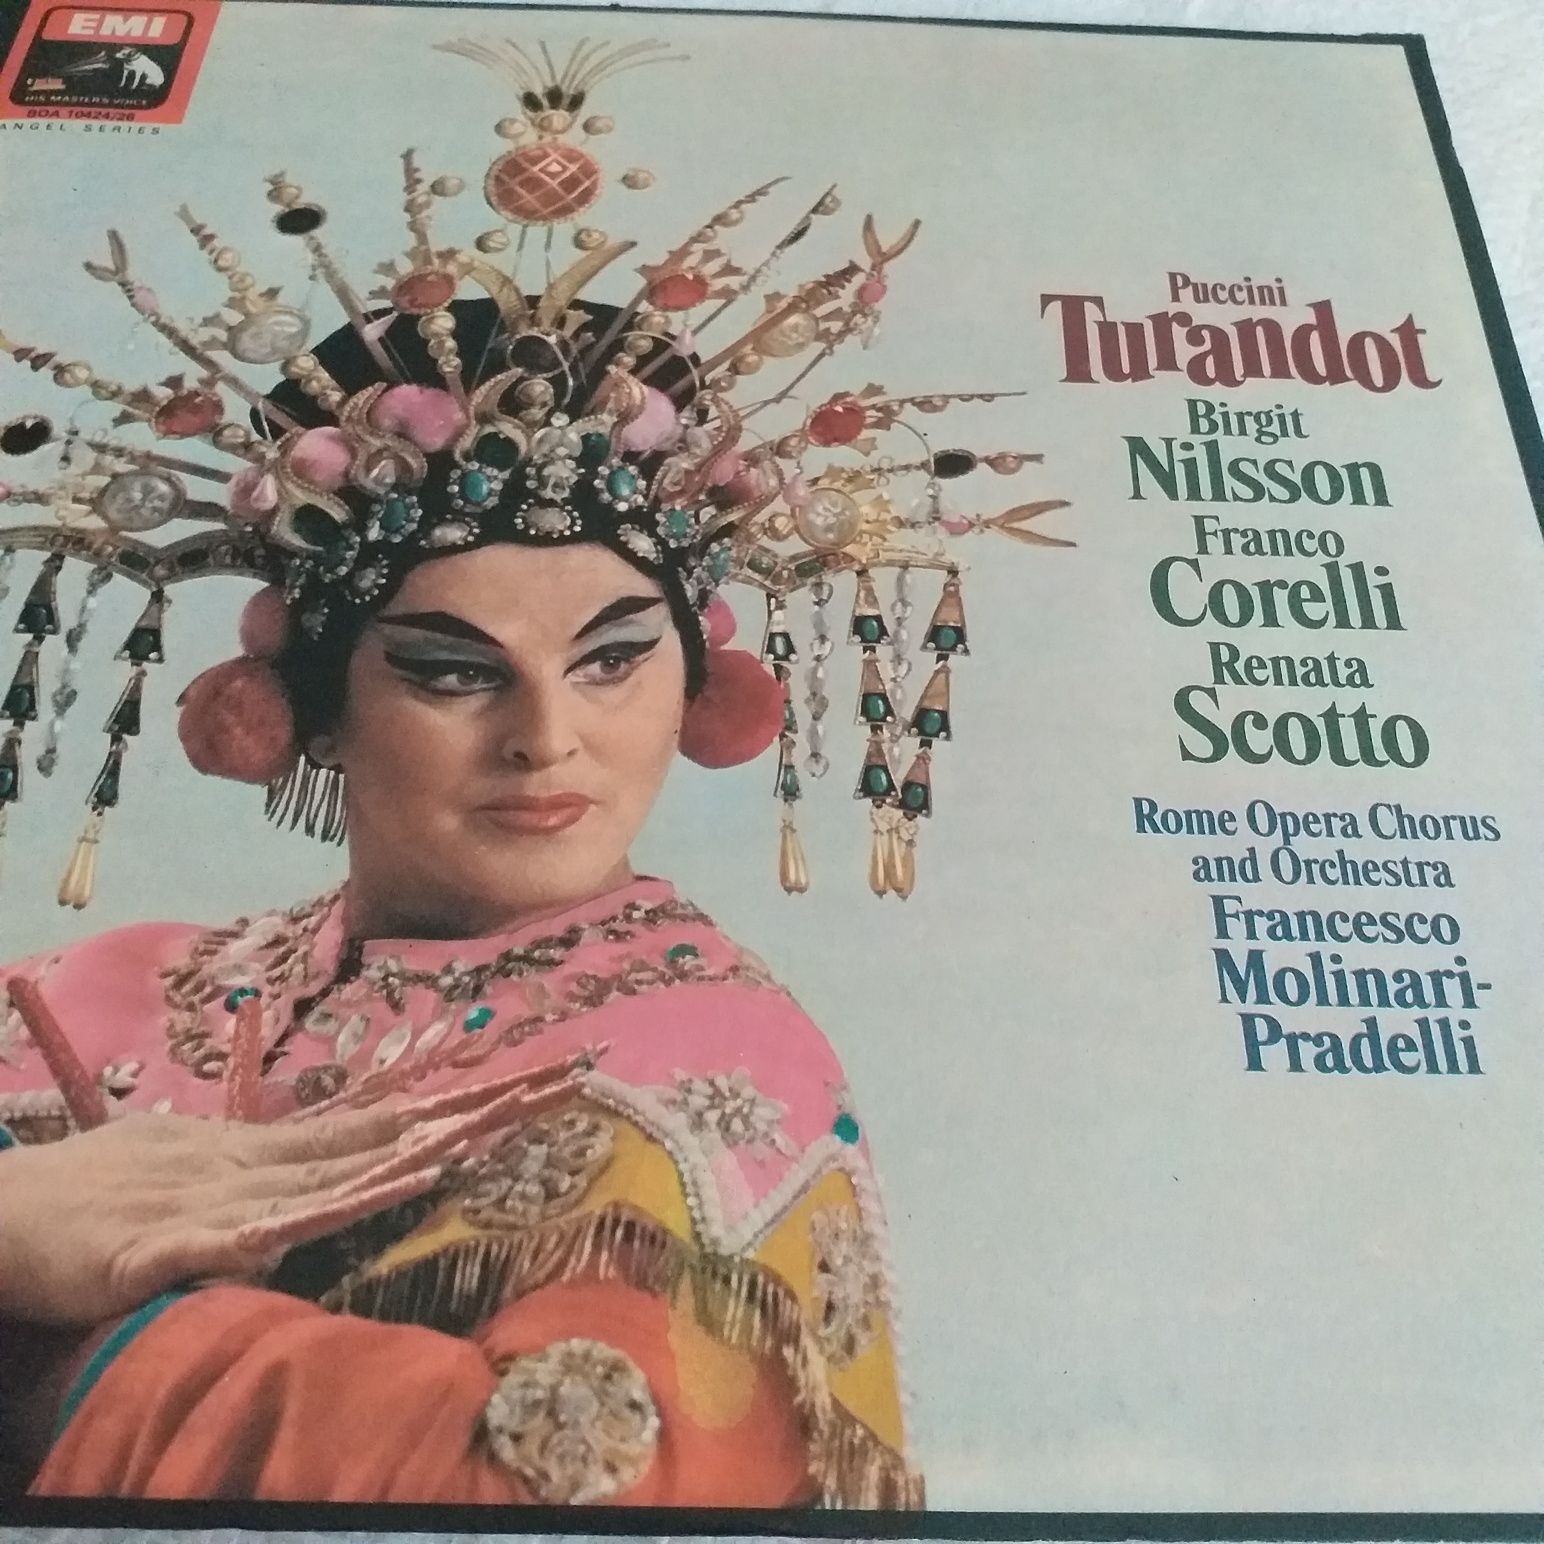 Turandot, Ballo in maschera, Gianni Schicchi